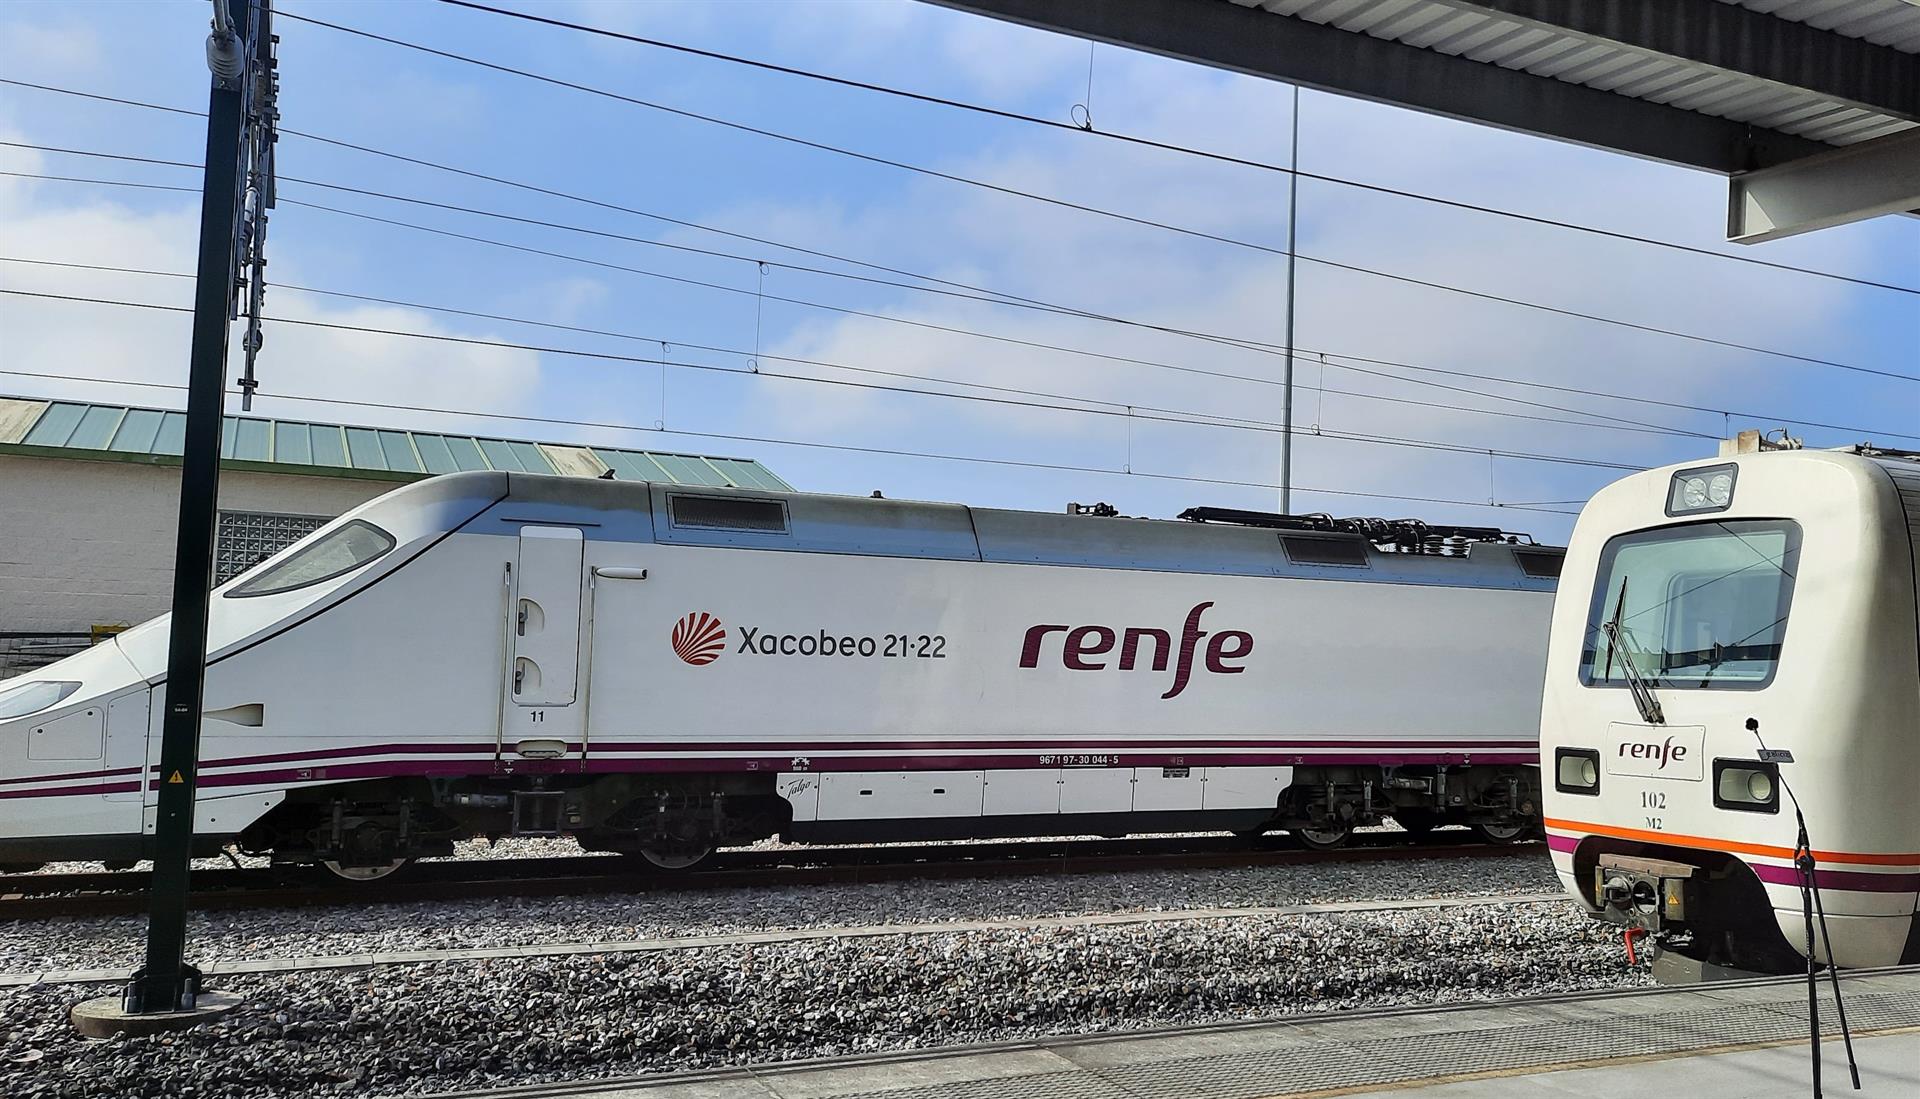 Más de medio centenar de empresas se presentan al concurso de Renfe para renovar la imagen de la marca AVE